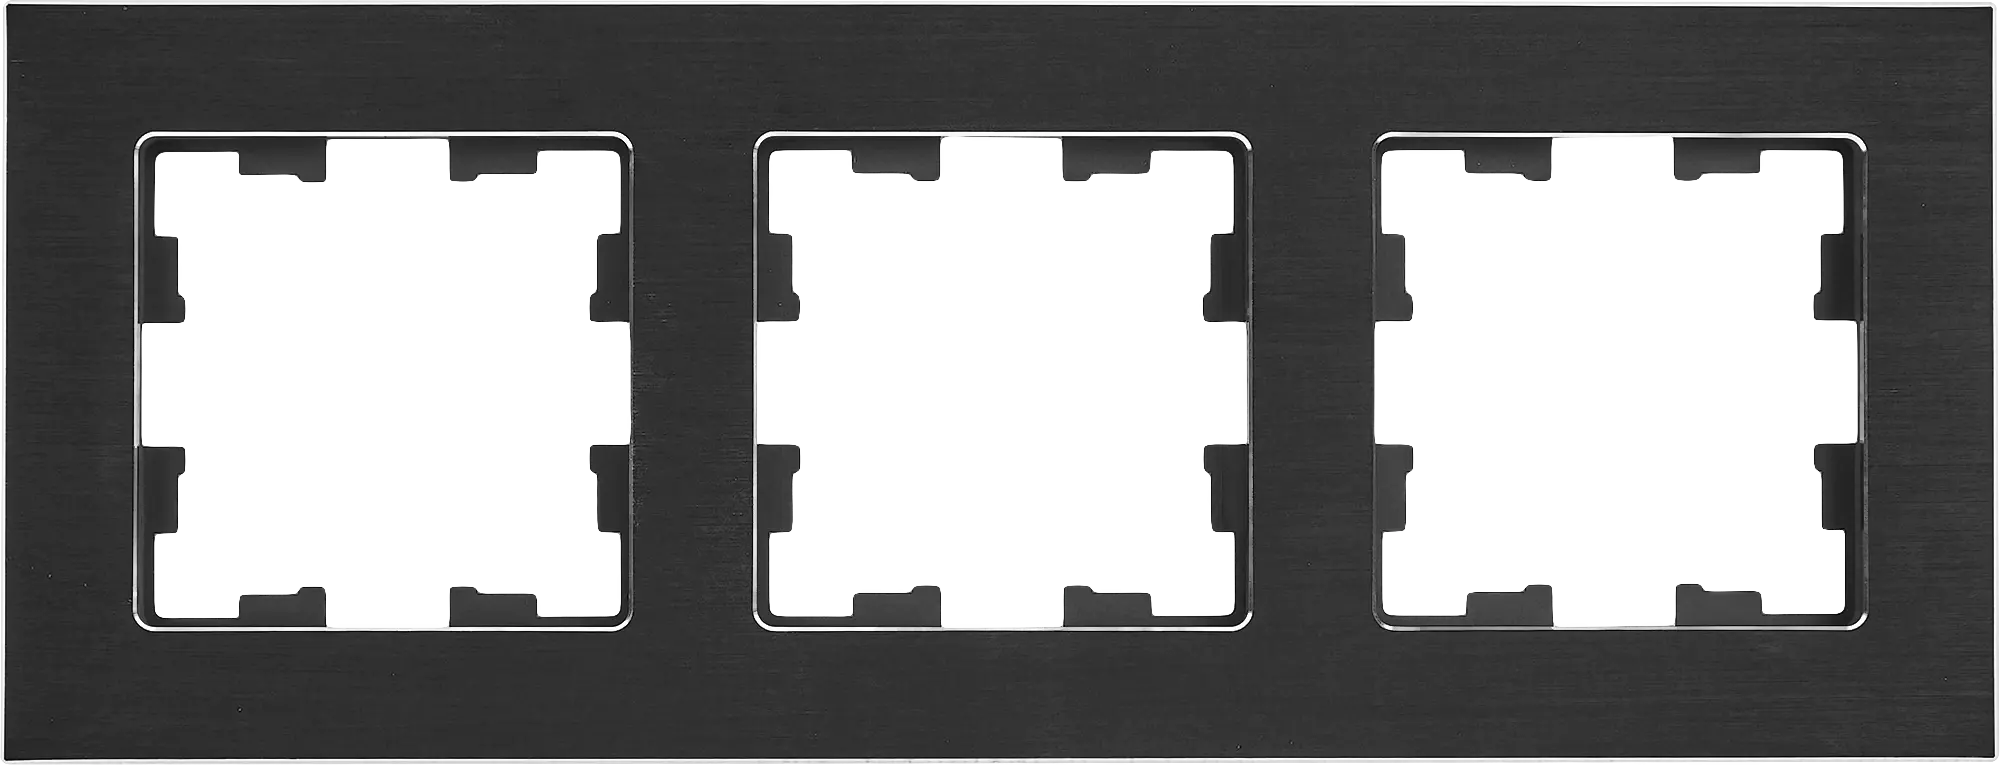 Рамка для розеток и выключателей Brite 3 поста металл цвет черный рамка для розеток и выключателей werkel metallic 4 поста металл глянцевый никель